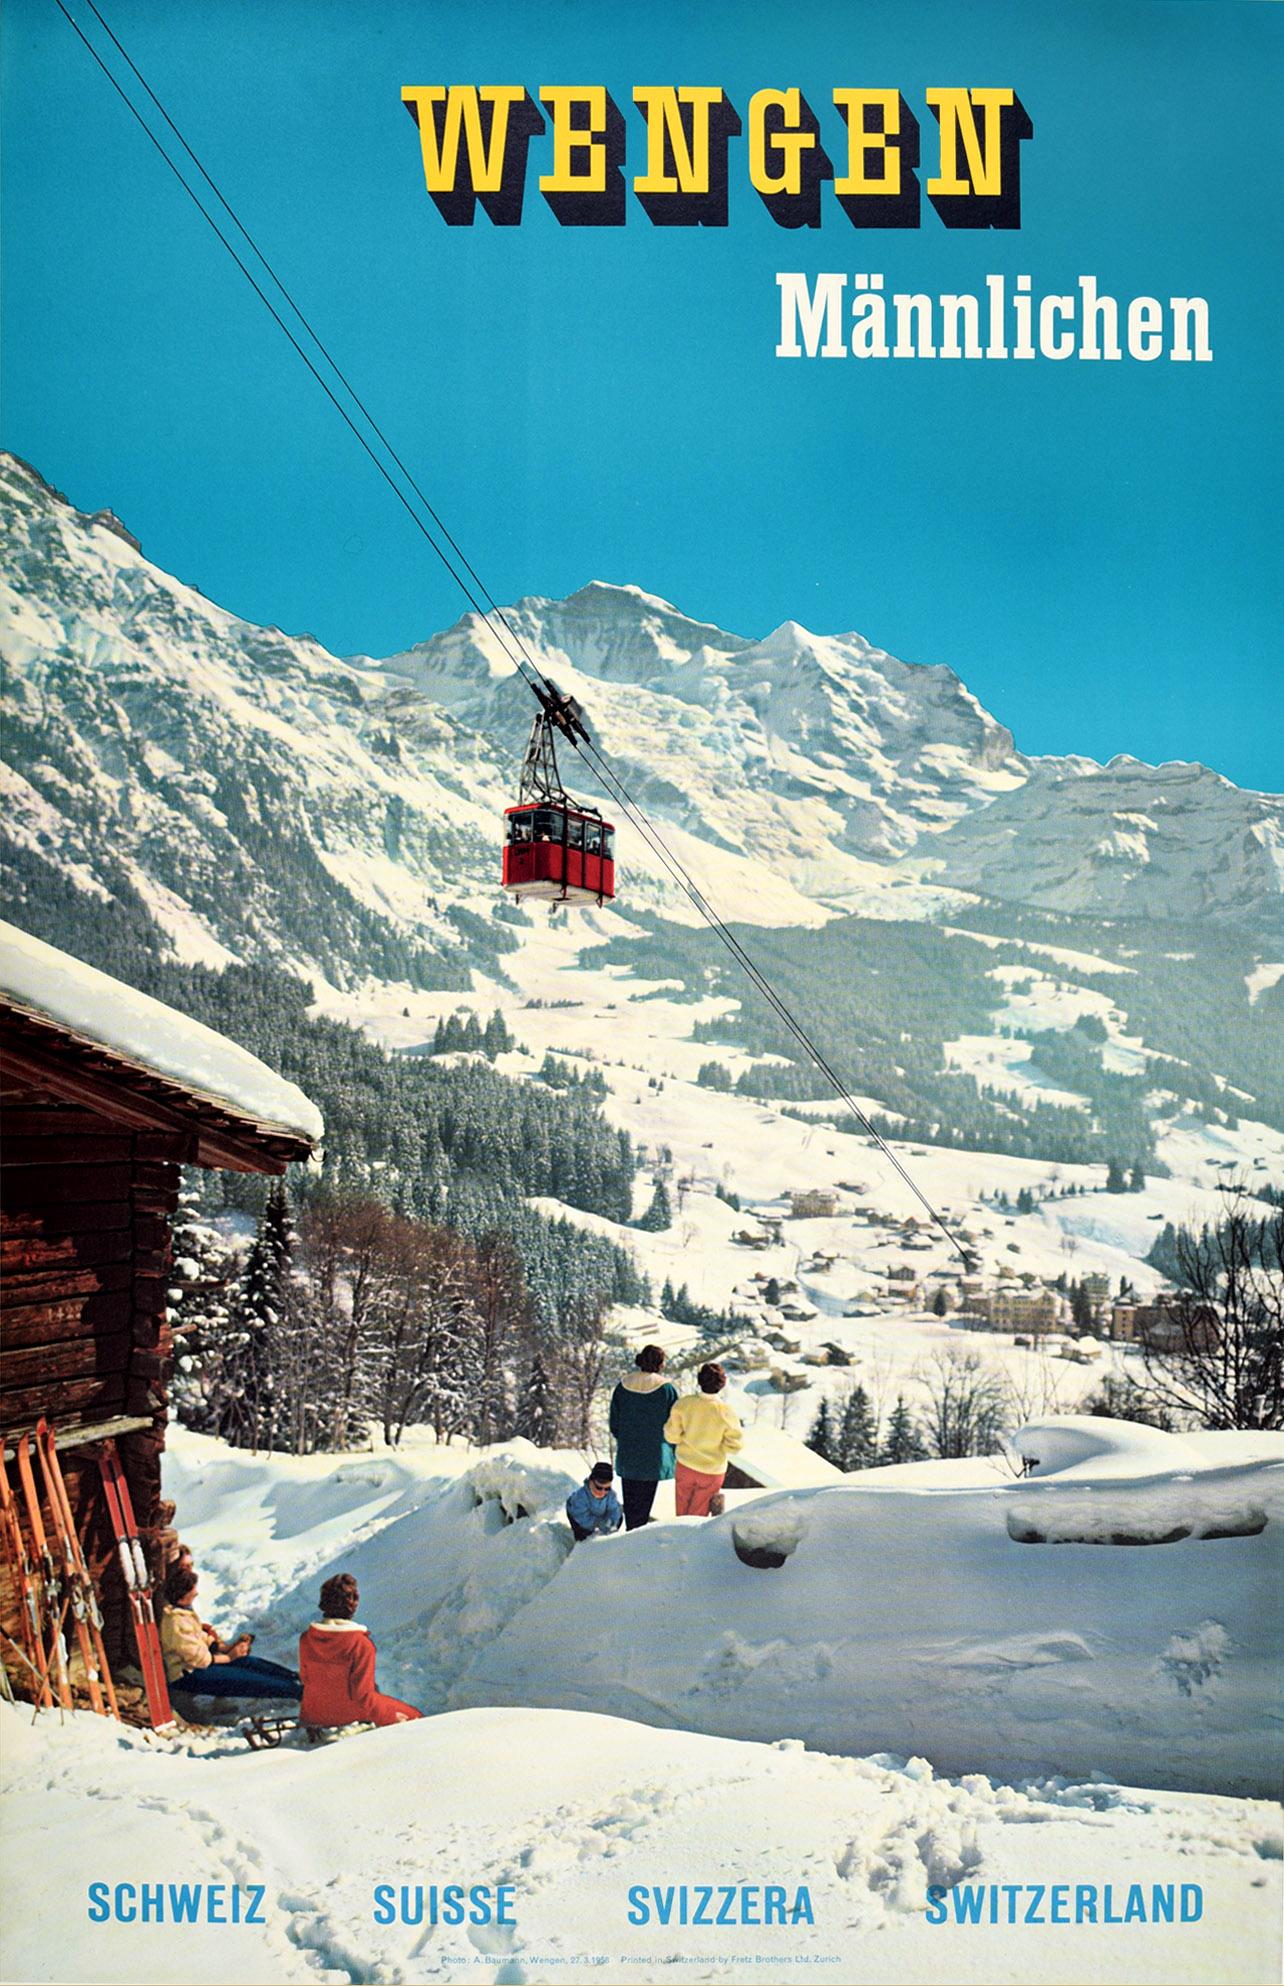 A Baumann Print - Original Vintage Poster Wengen Mannlichen Mountains Swiss Alps Ski Winter Sport